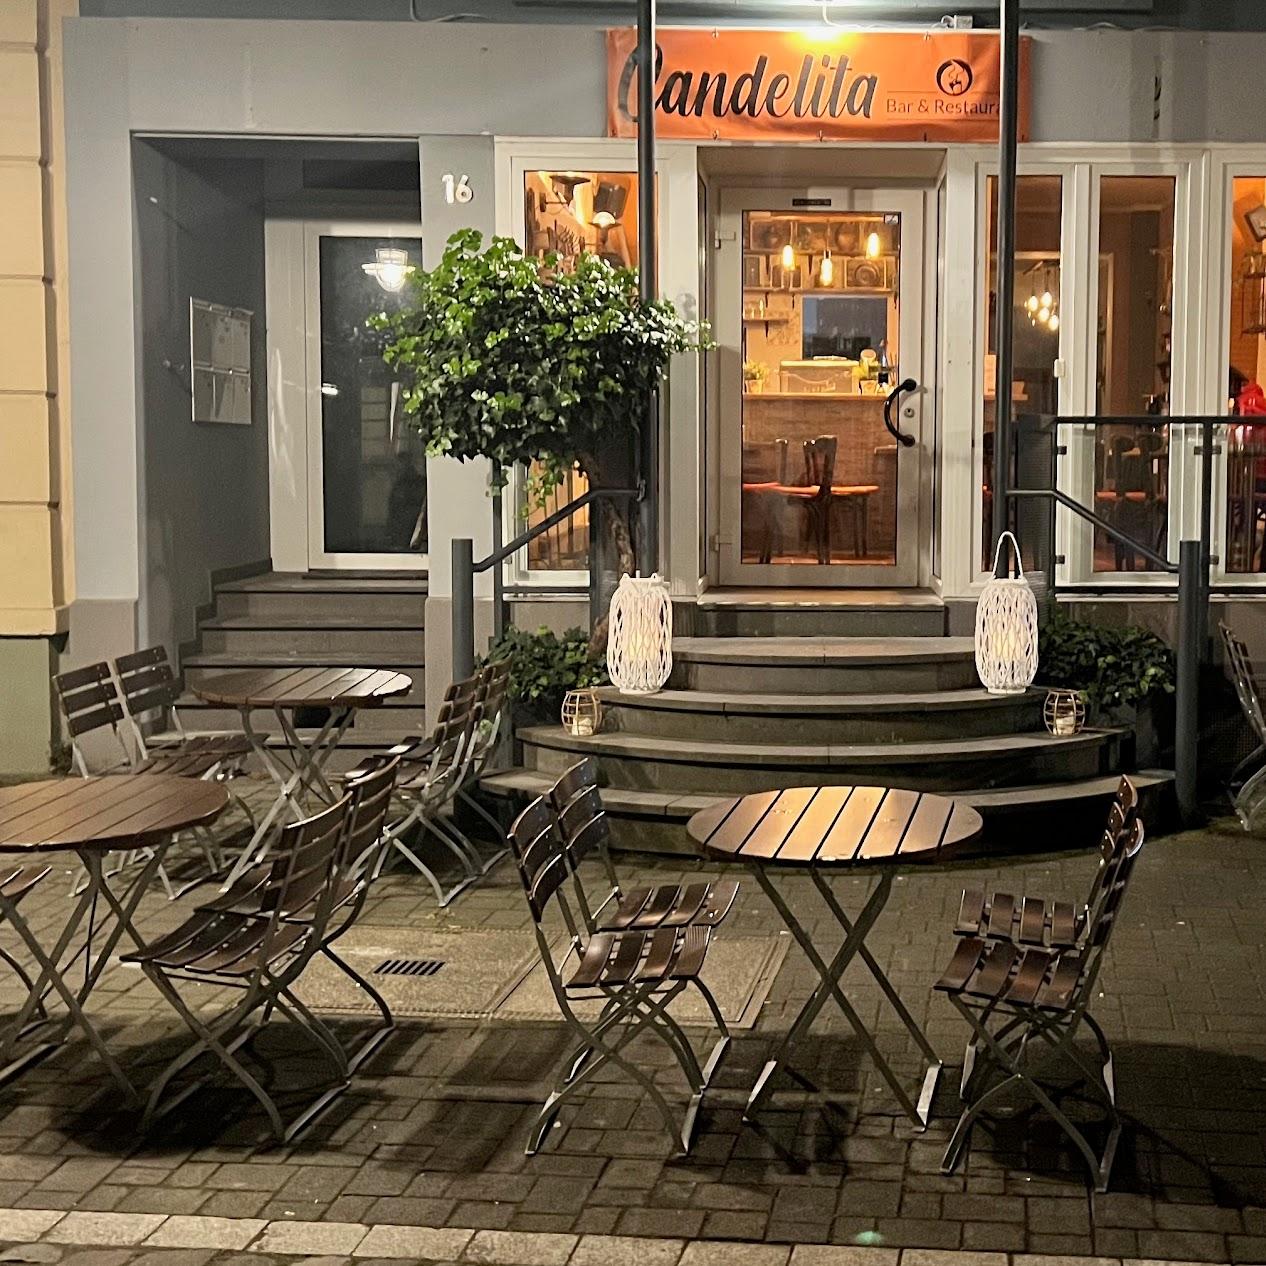 Restaurant "Candelita Café & Restaurant Lieferservice" in Brühl